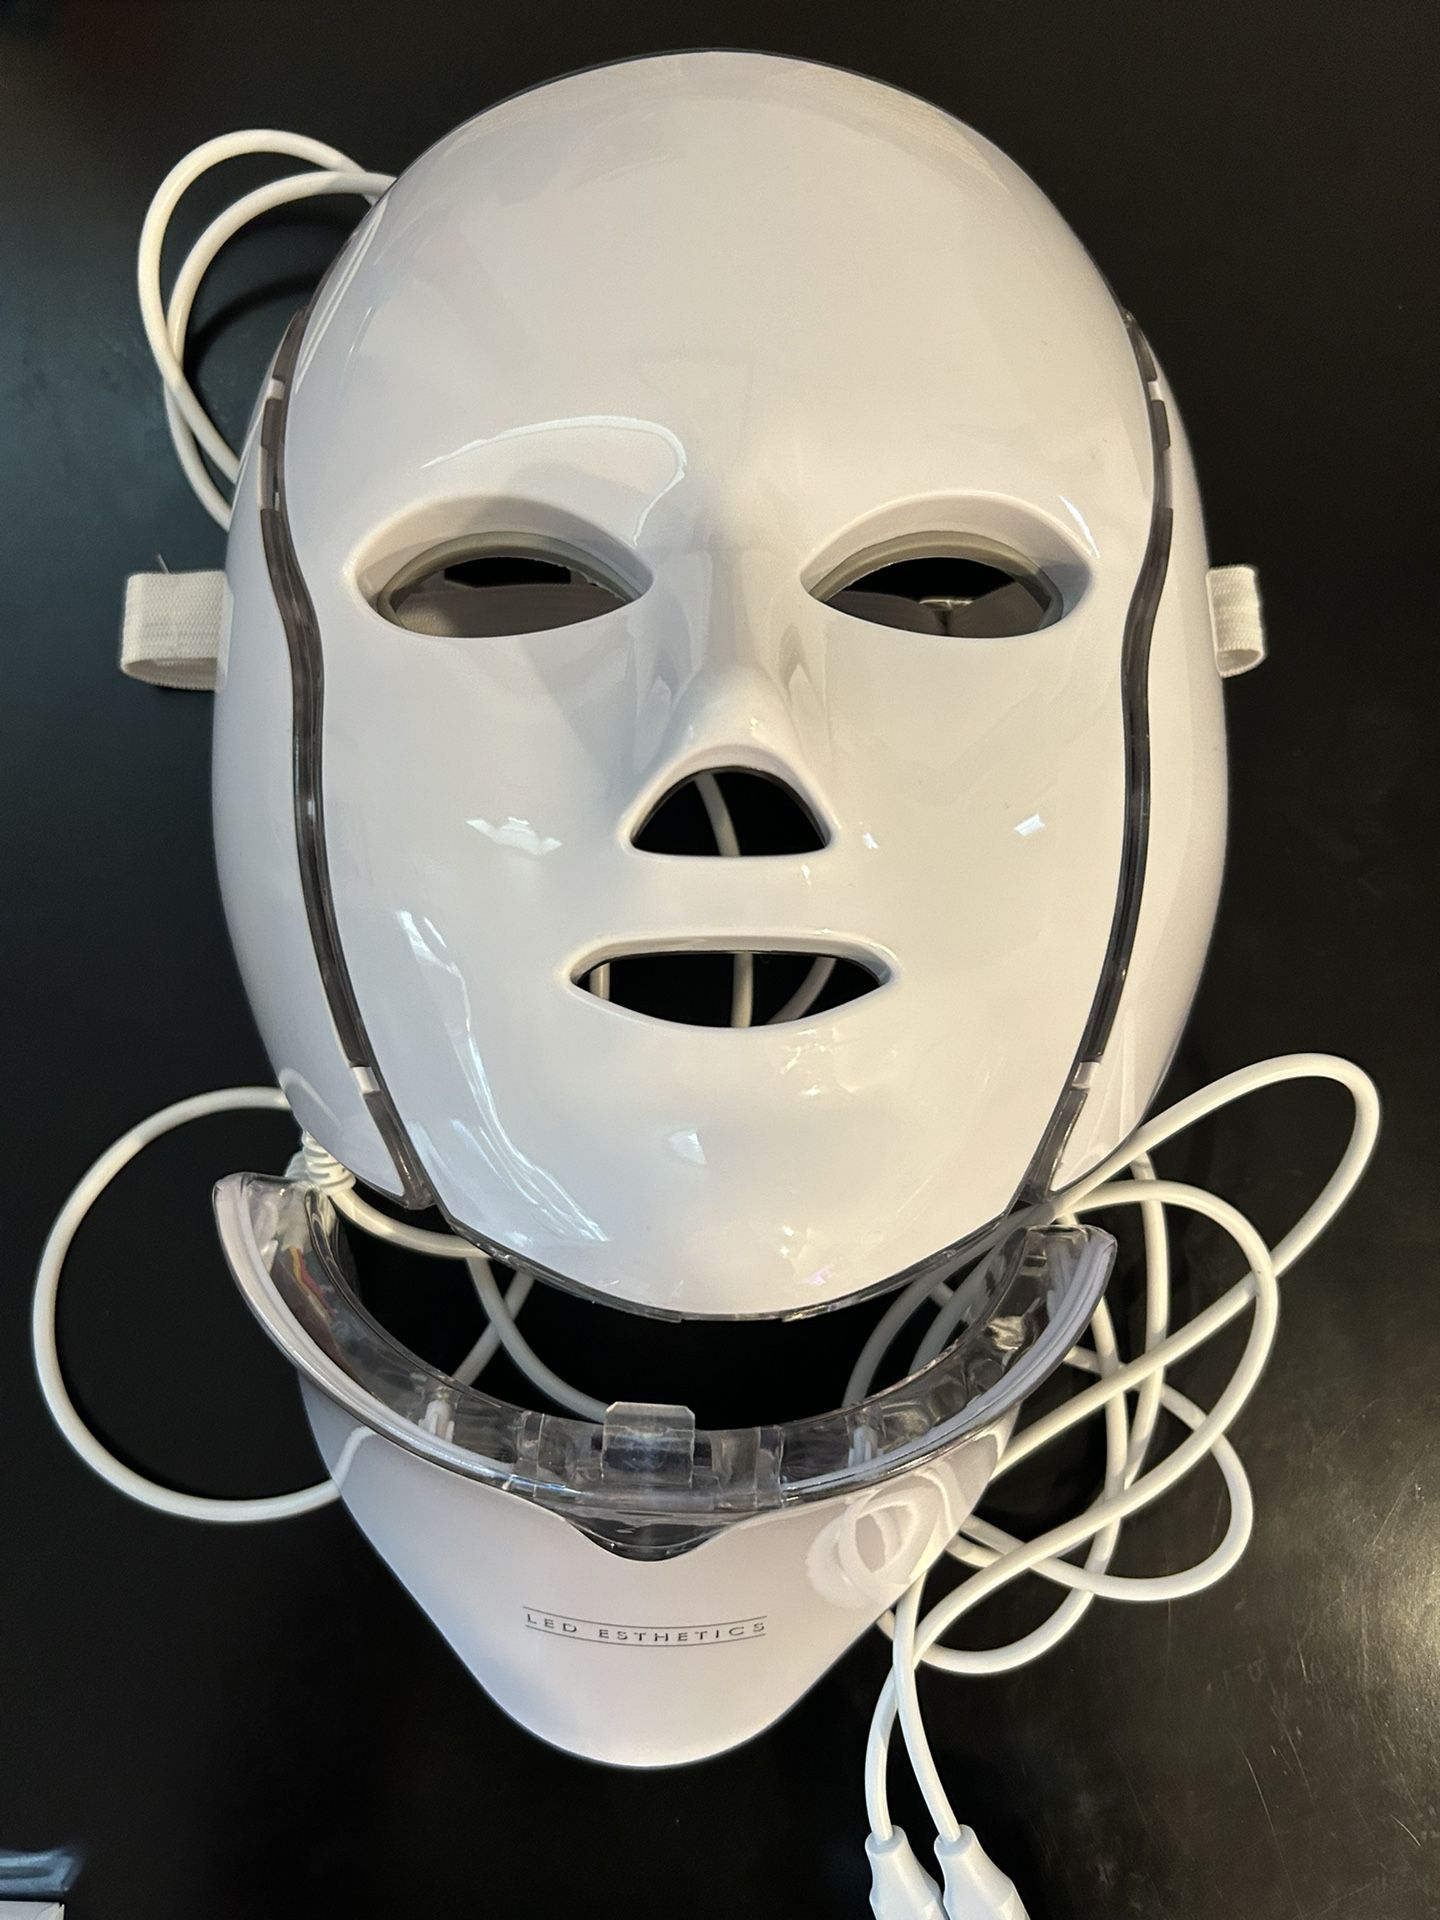 LED esthetic Mask